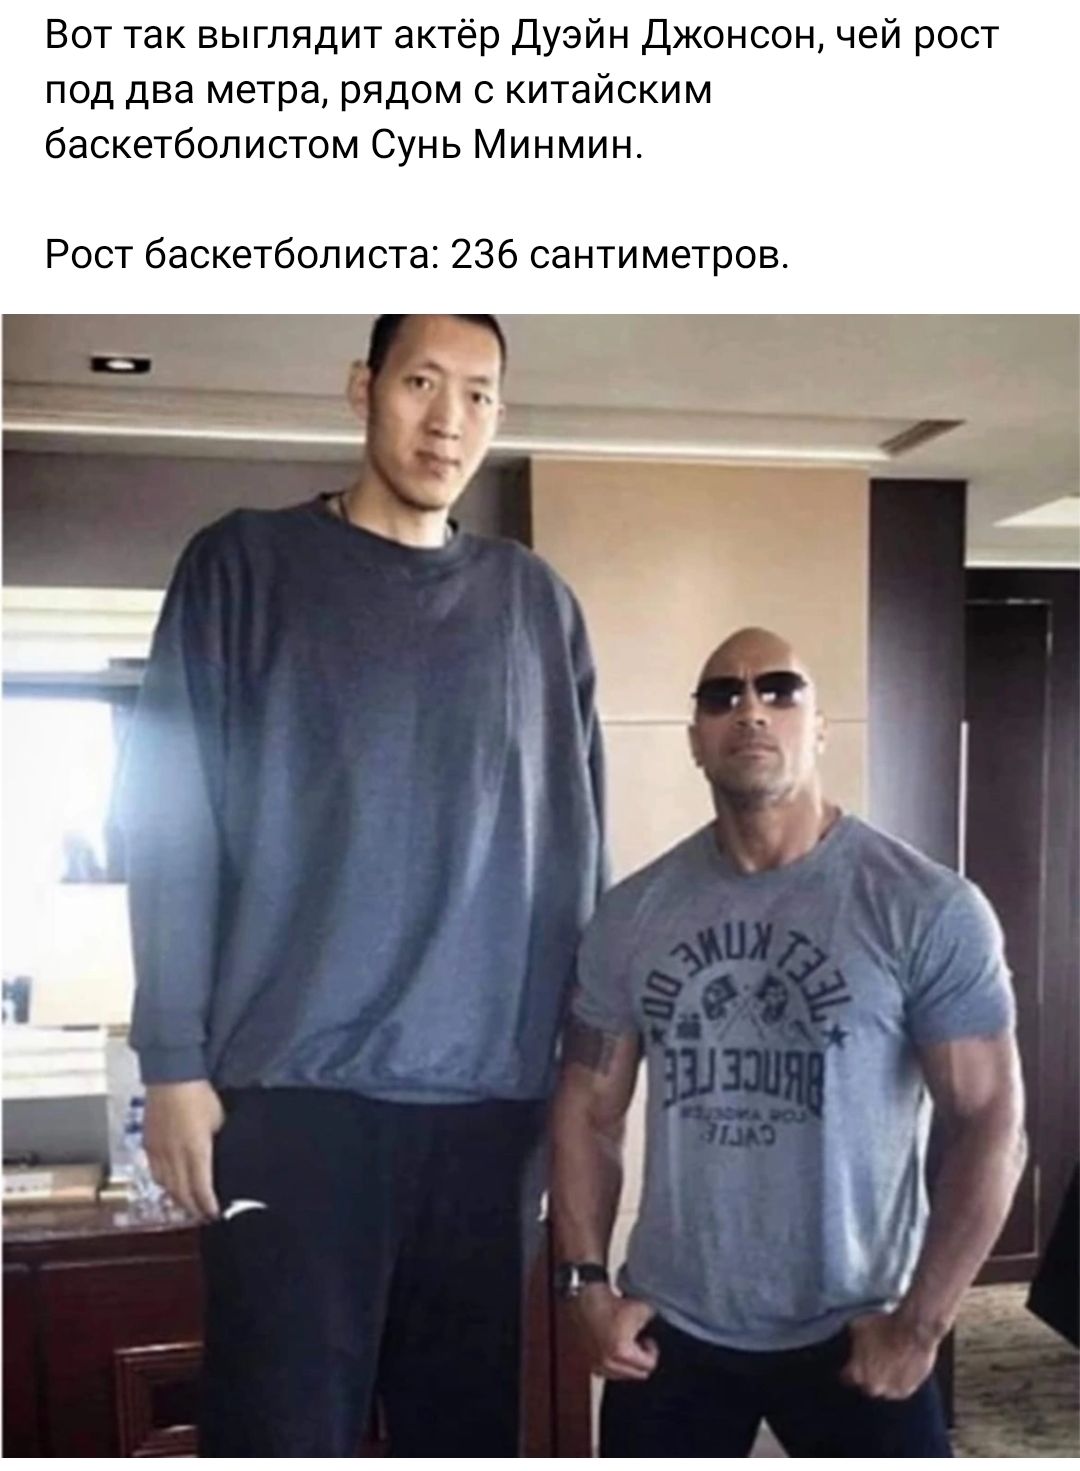 Вот так выглядит актер Дуэйн Джонсон чей рост под два метра рядом с китайским баскетболистом Сунь Миимин Рост баскетболист 236 сантиметров